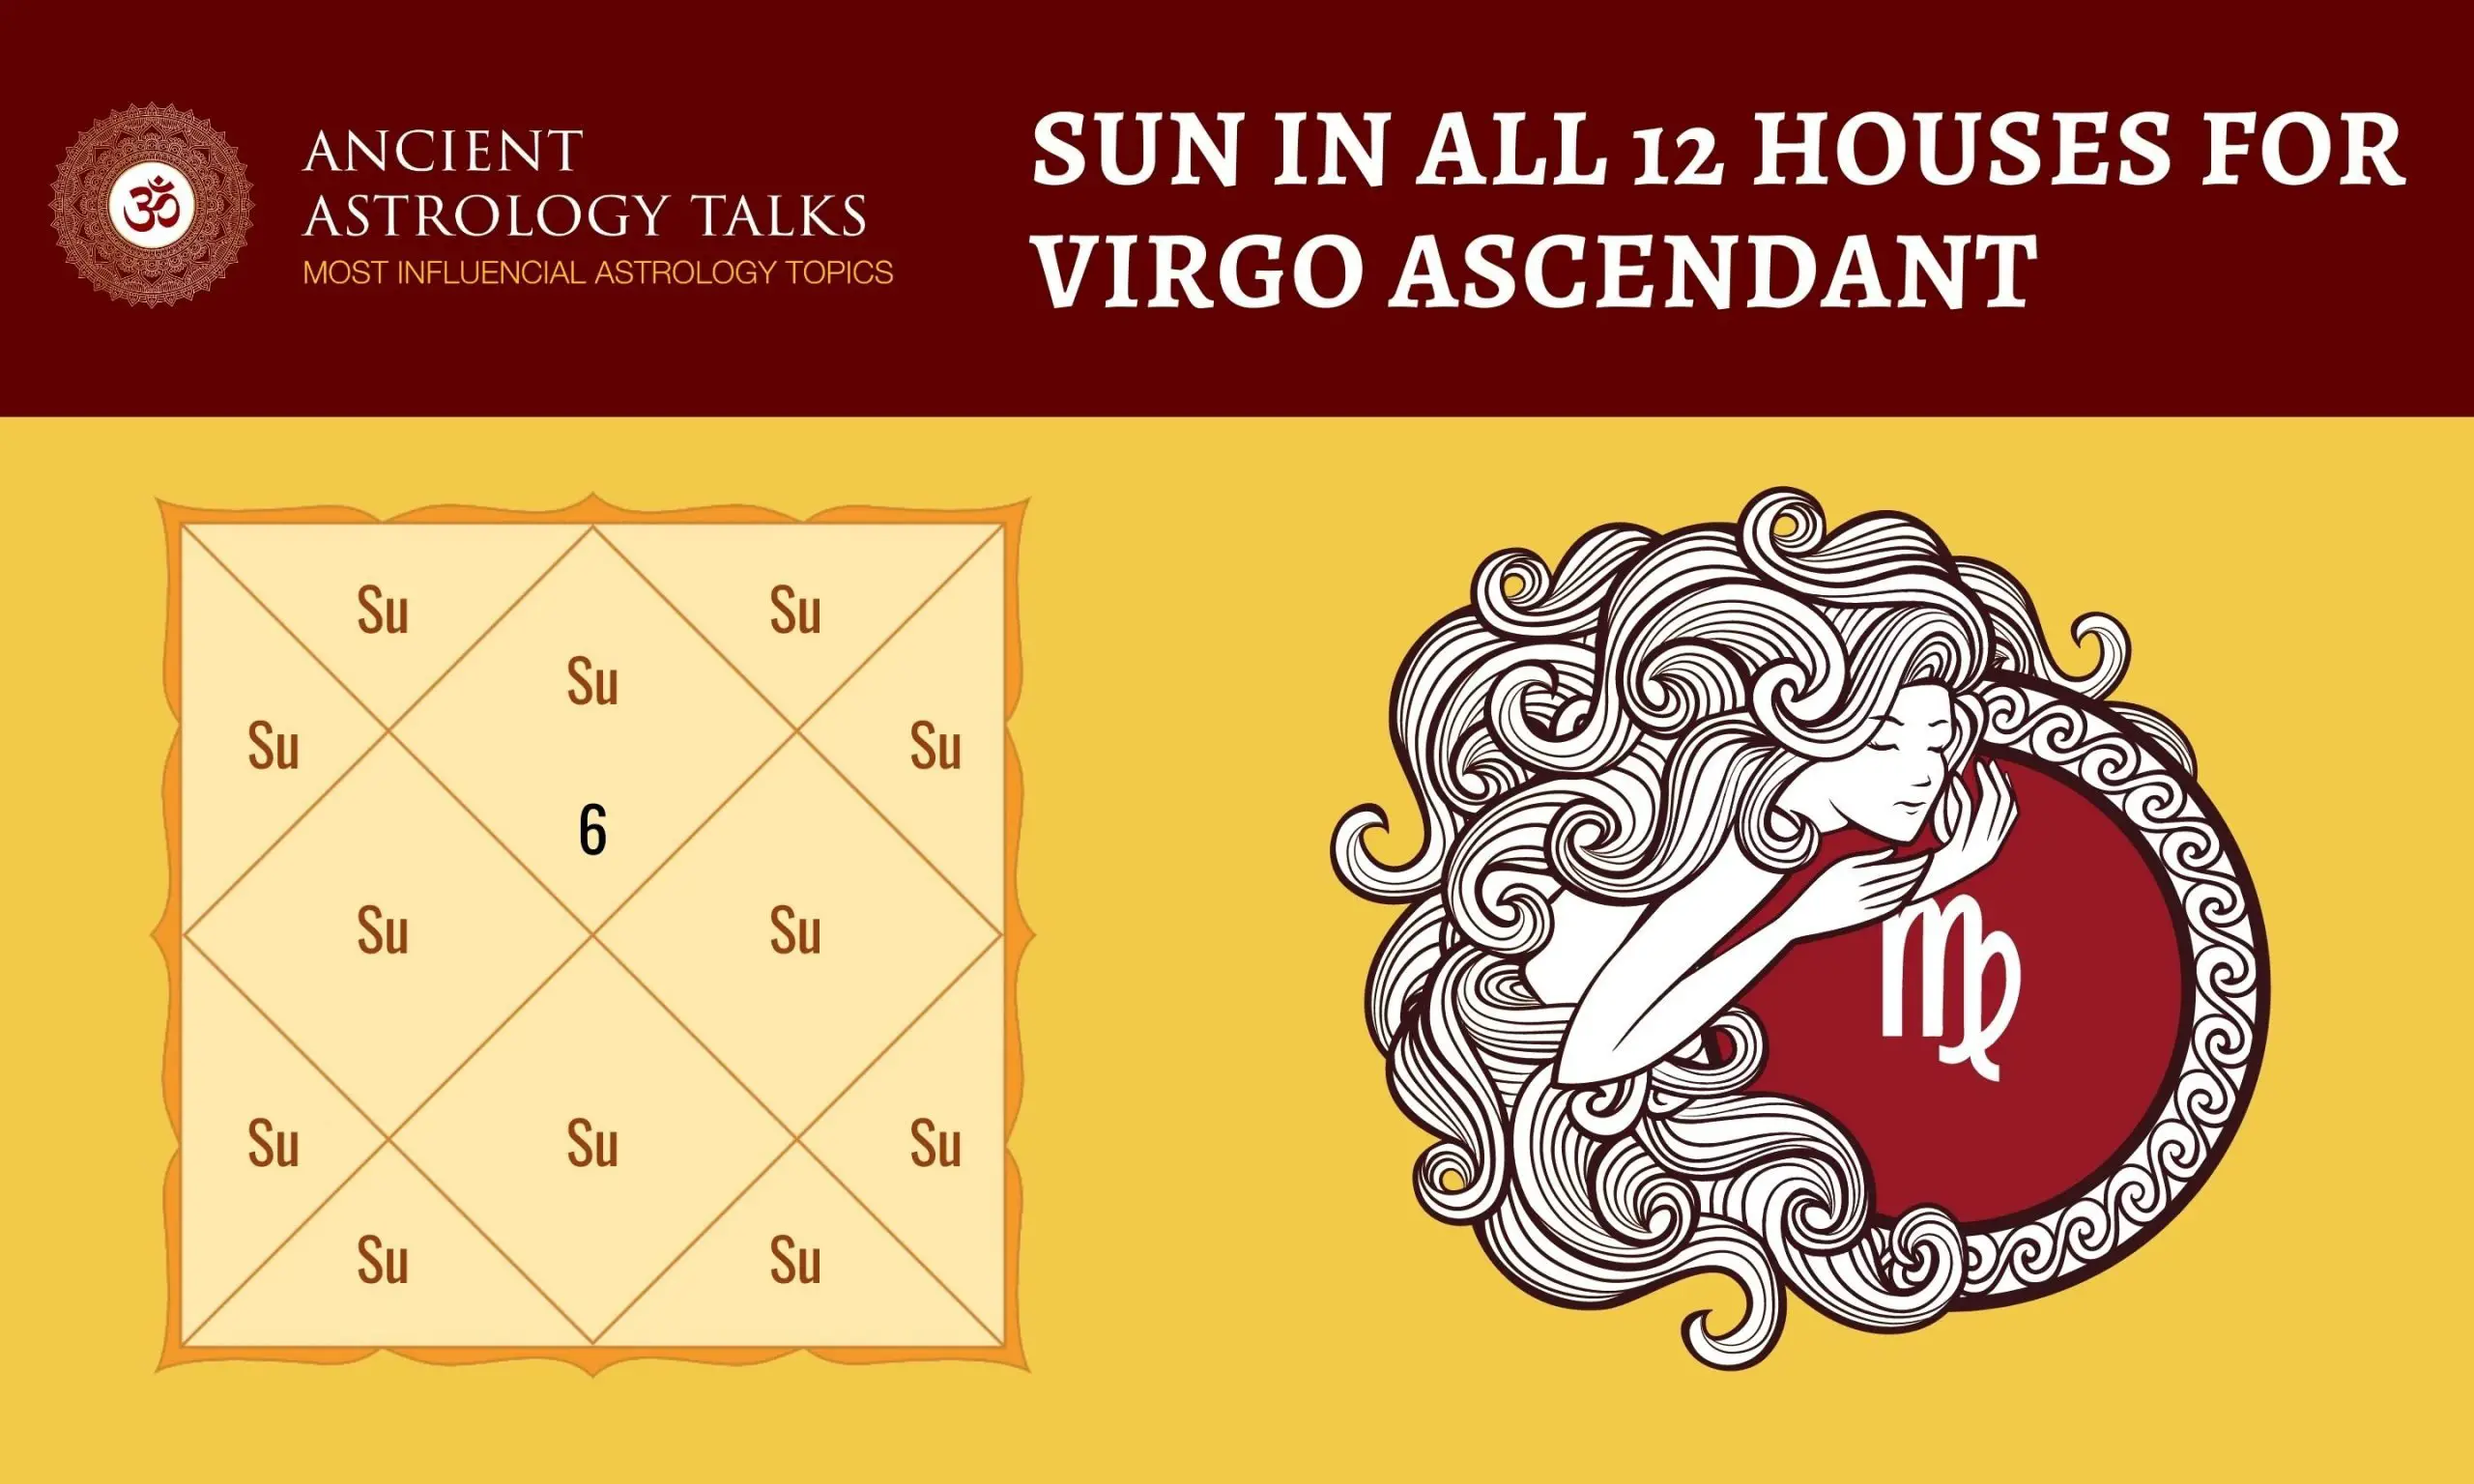 Sun in all 12 houses for Virgo Ascendant